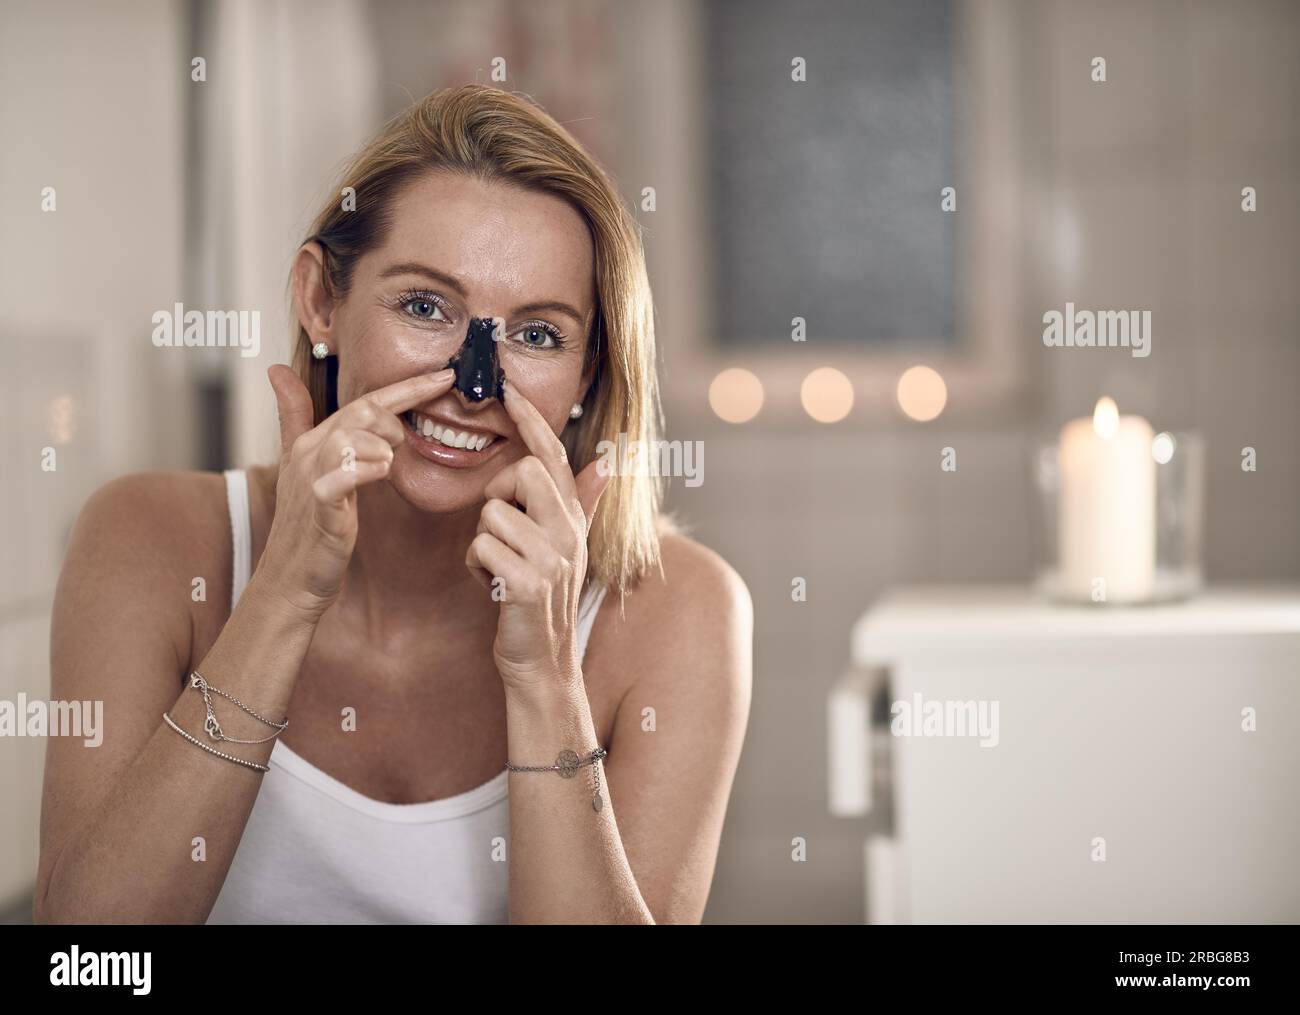 Attraente donna bionda di mezza età che applica una maschera facciale anti-età al naso in un bagno con candele brucianti in un concetto di bellezza, cura della pelle Foto Stock